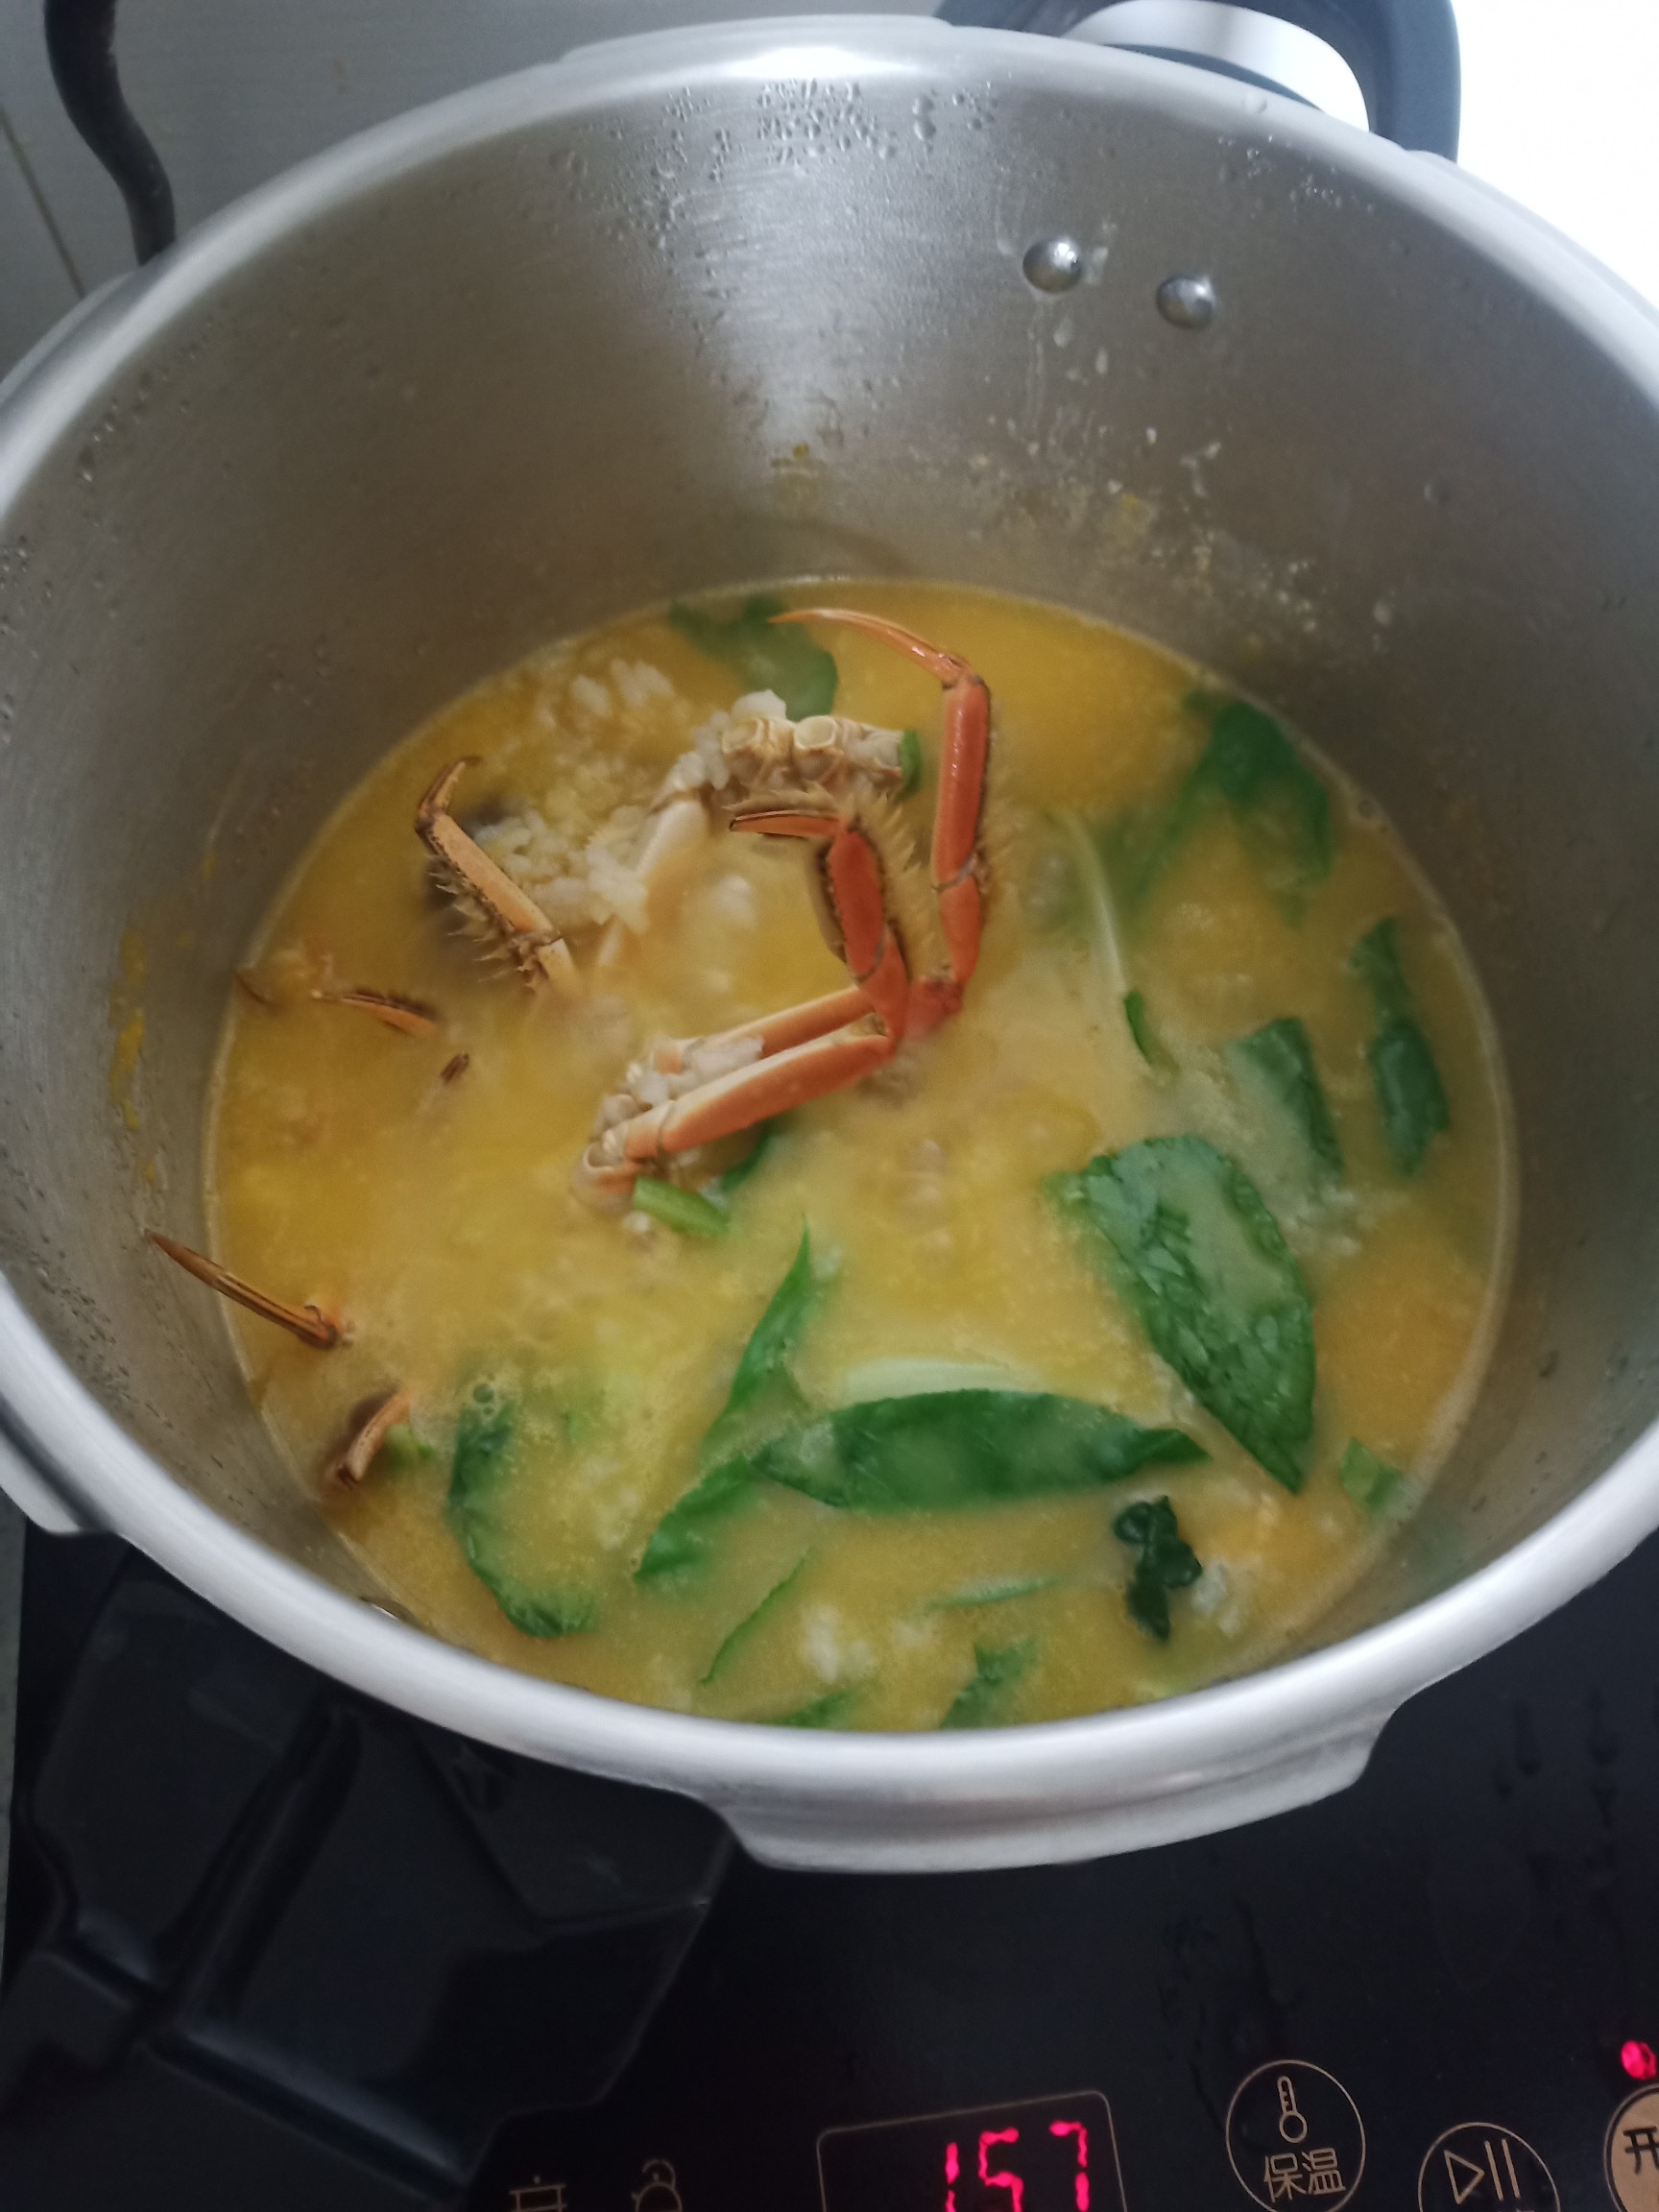 Hairy Crab Congee recipe